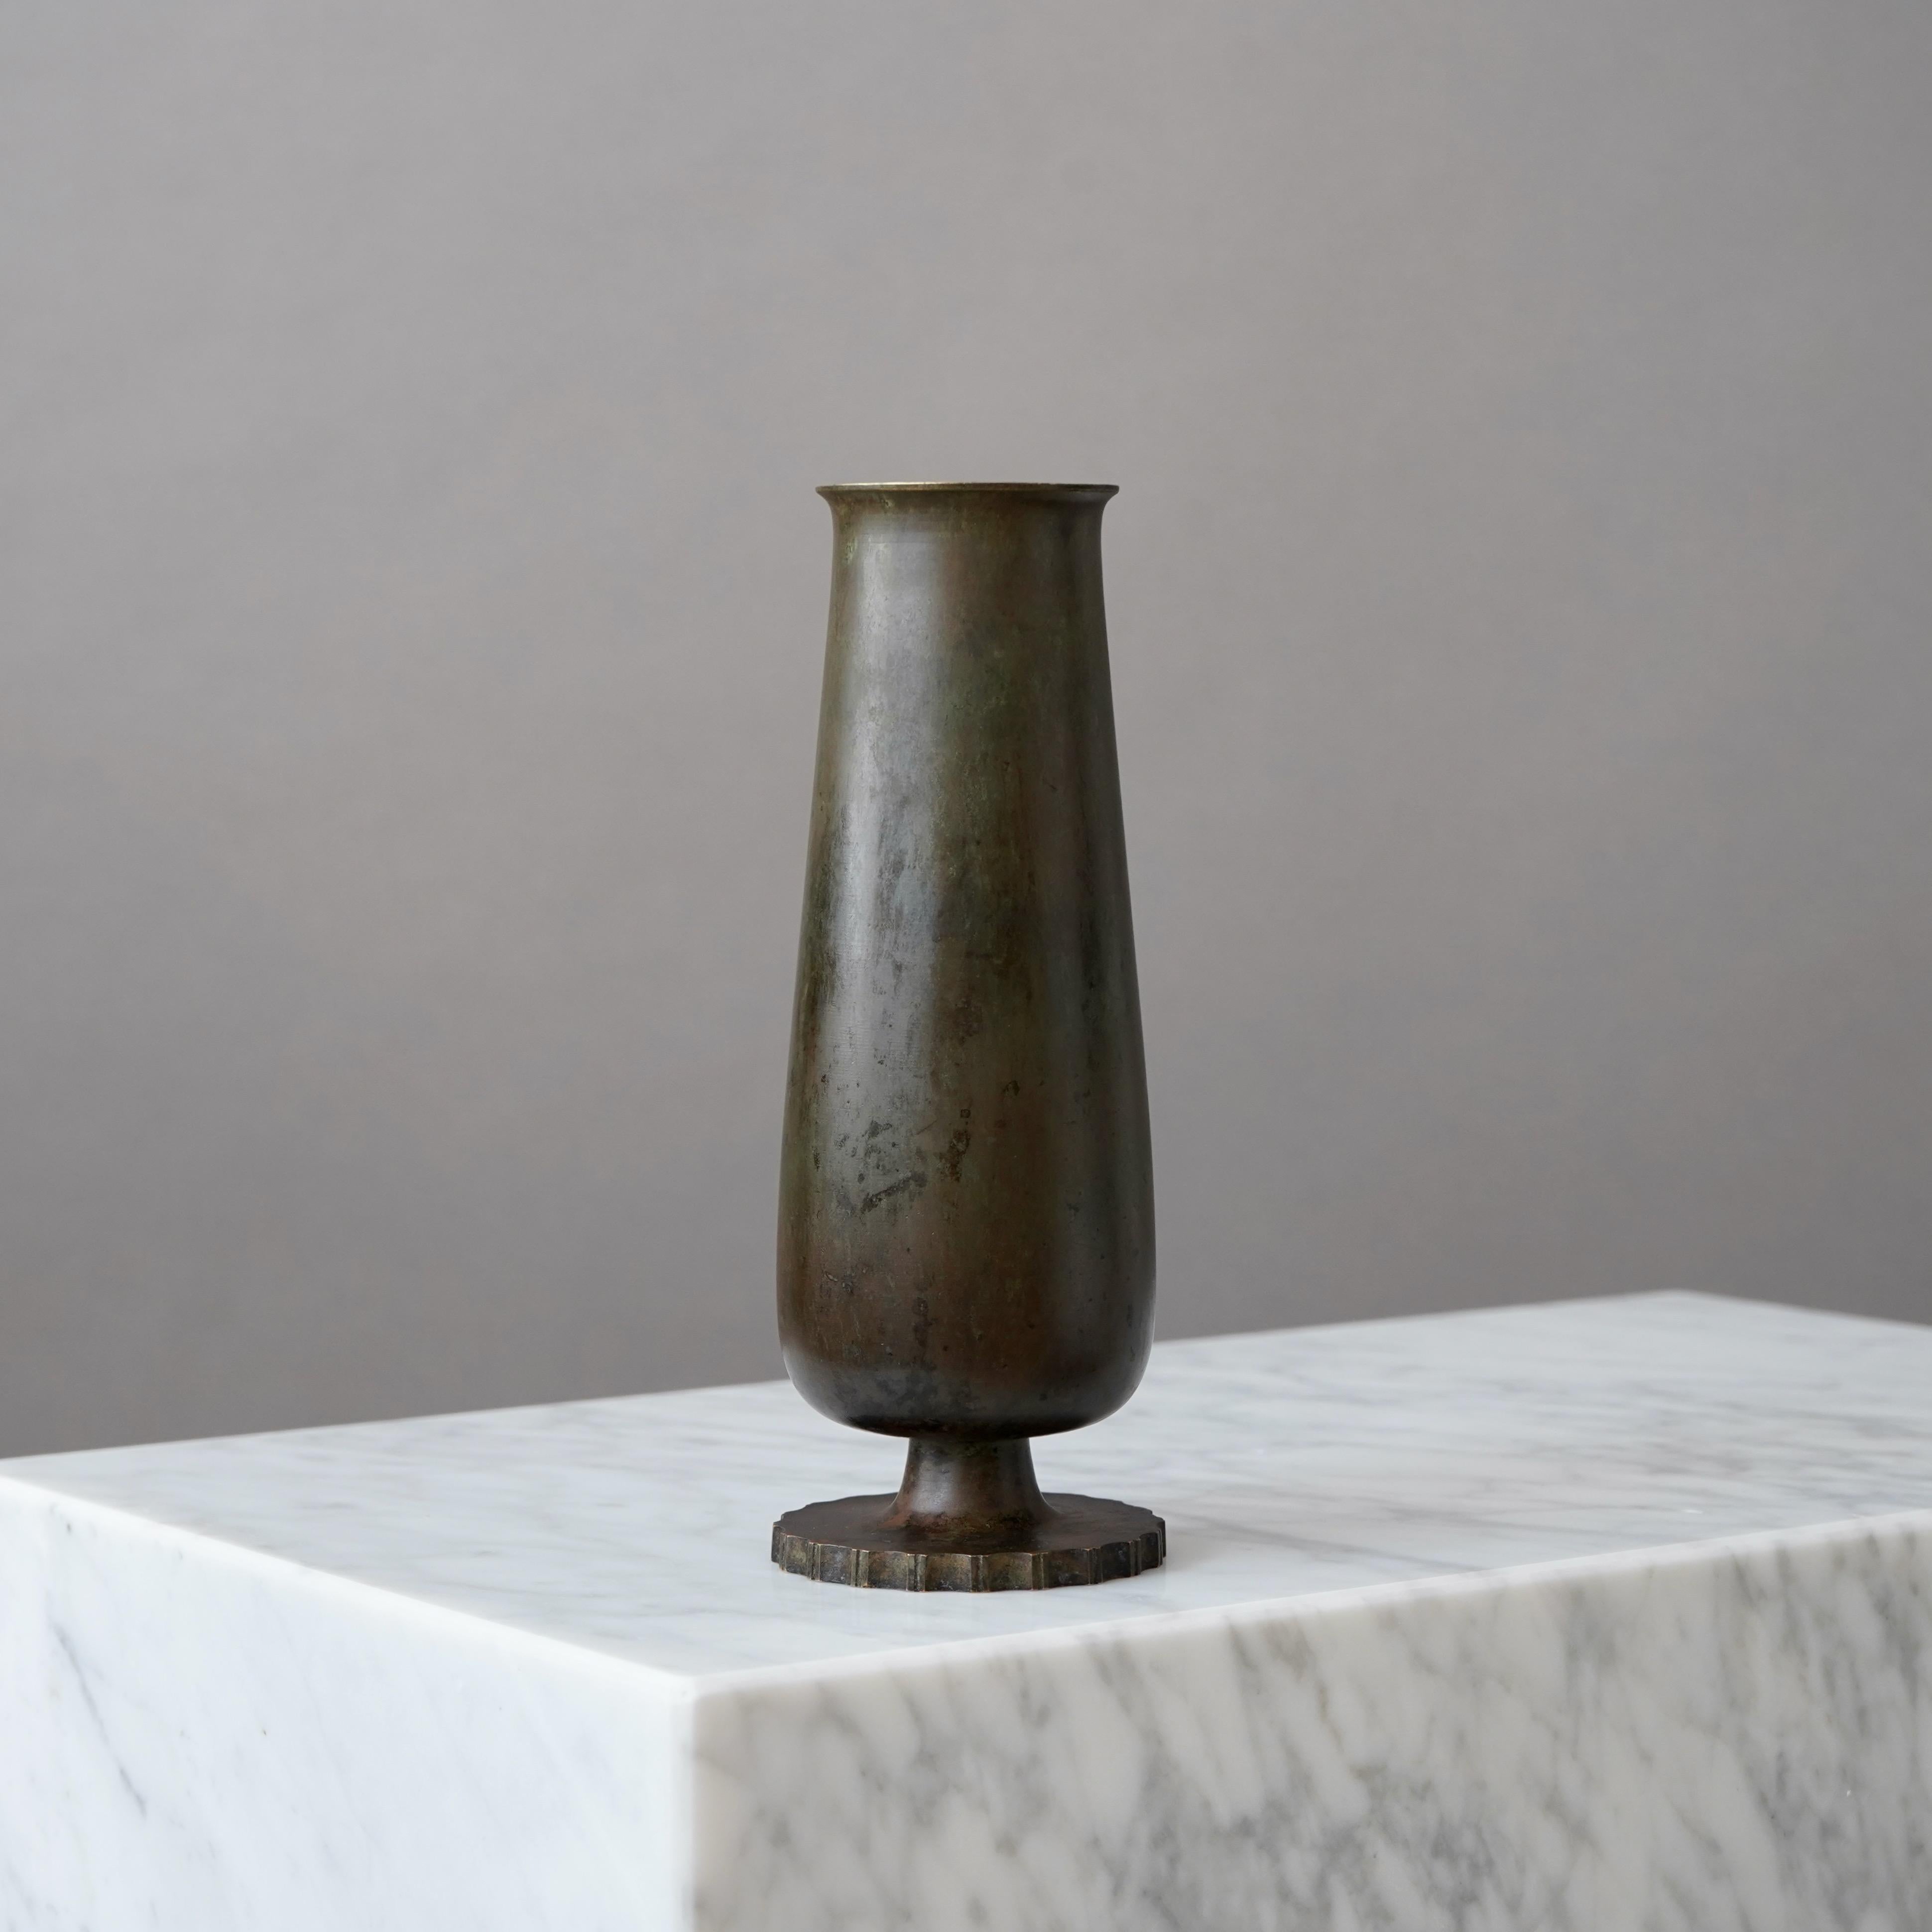 Un magnifique vase en bronze avec une patine étonnante. 
Fabriqué par GAB Guldsmedsaktiebolaget, Suède, années 1930.  

Très bon état, avec quelques légères rayures.
Estampillé 